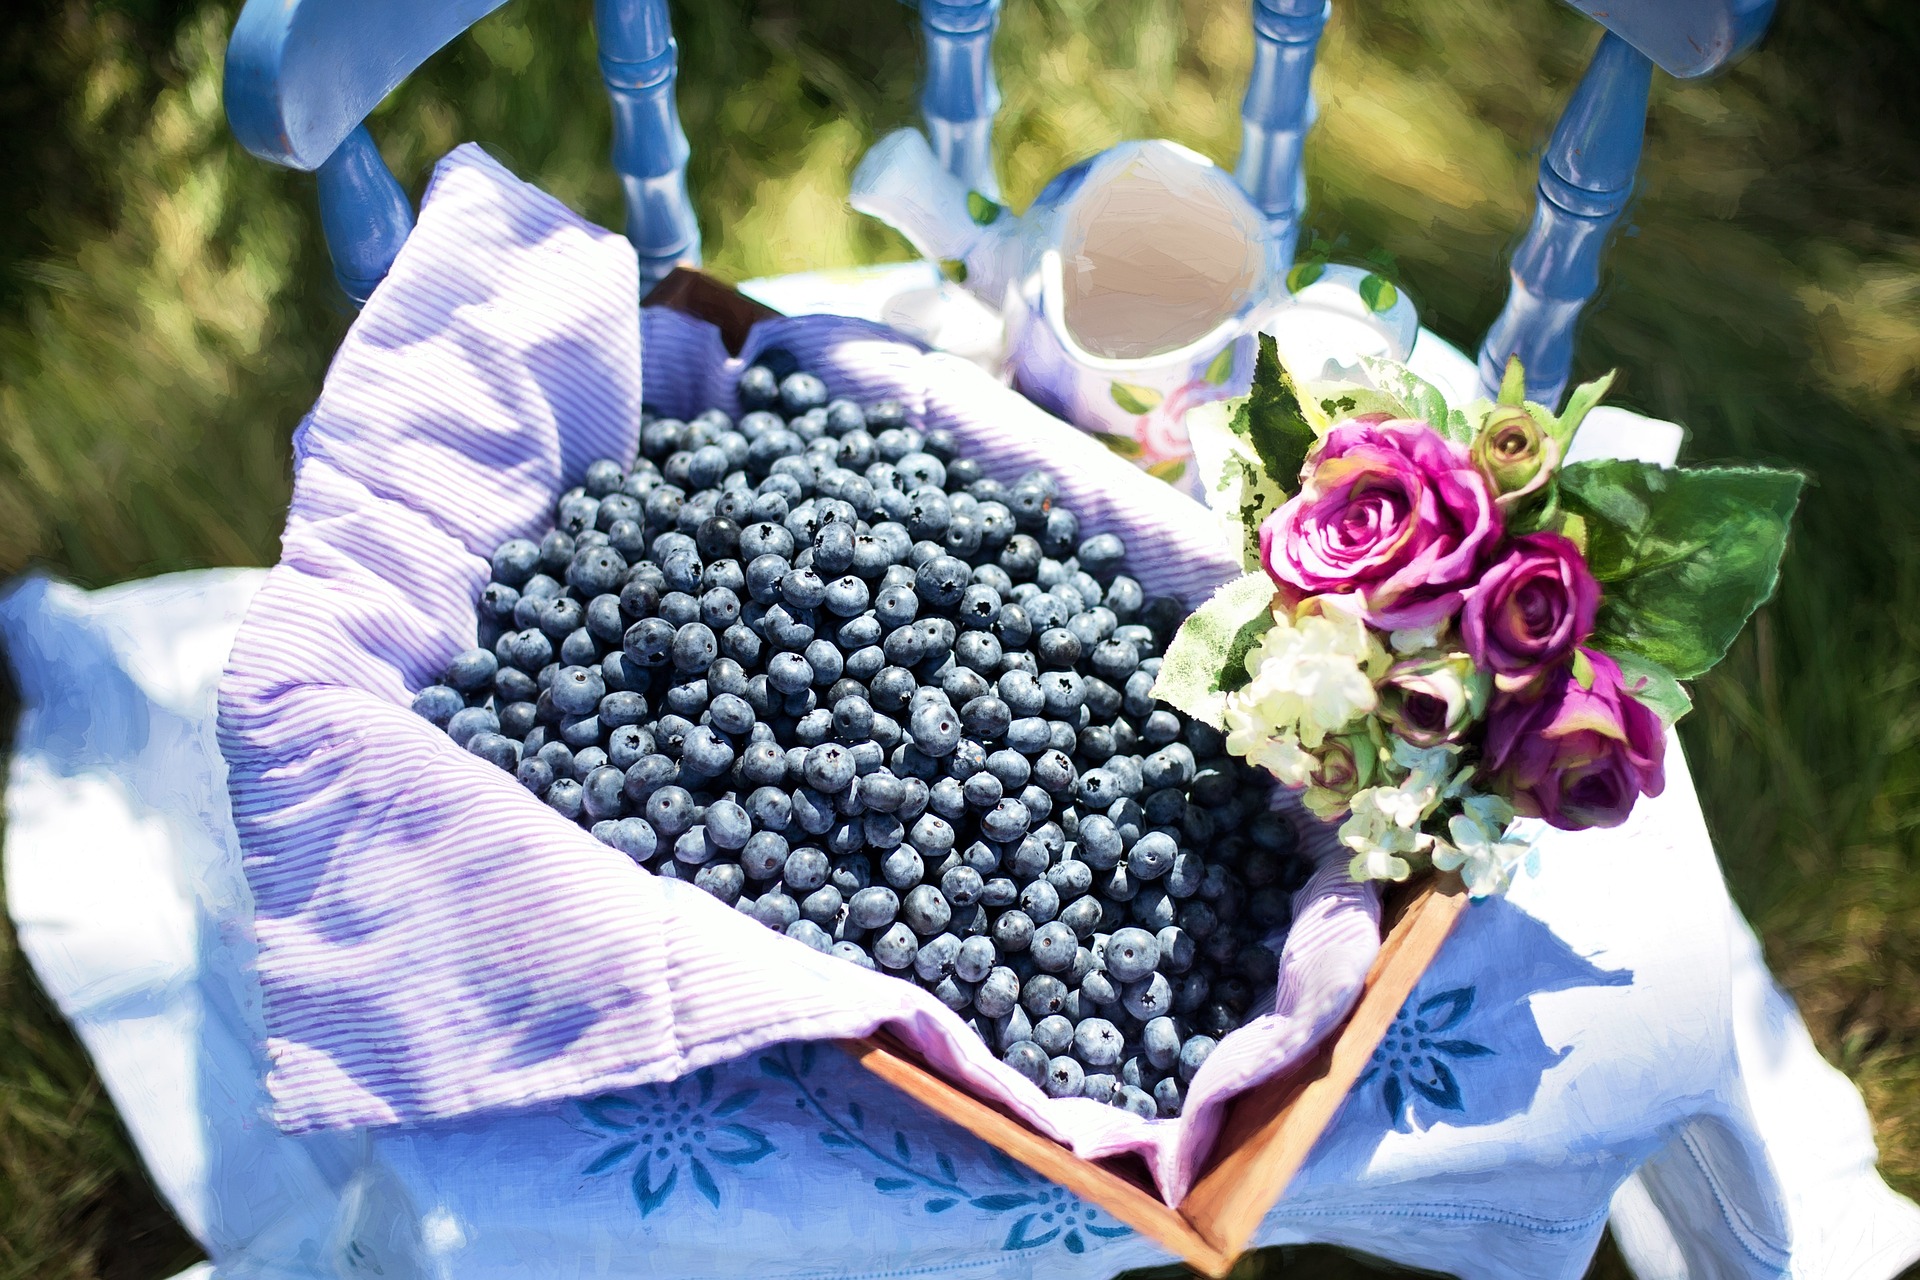 L'anthocyanine est le pigment végétal qui donne aux fruits et légumes bleus/violets leur couleur distinctive. Il a également une grande valeur nutritionnelle pour le corps humain. (Image: Jill Welington / Pixabay)